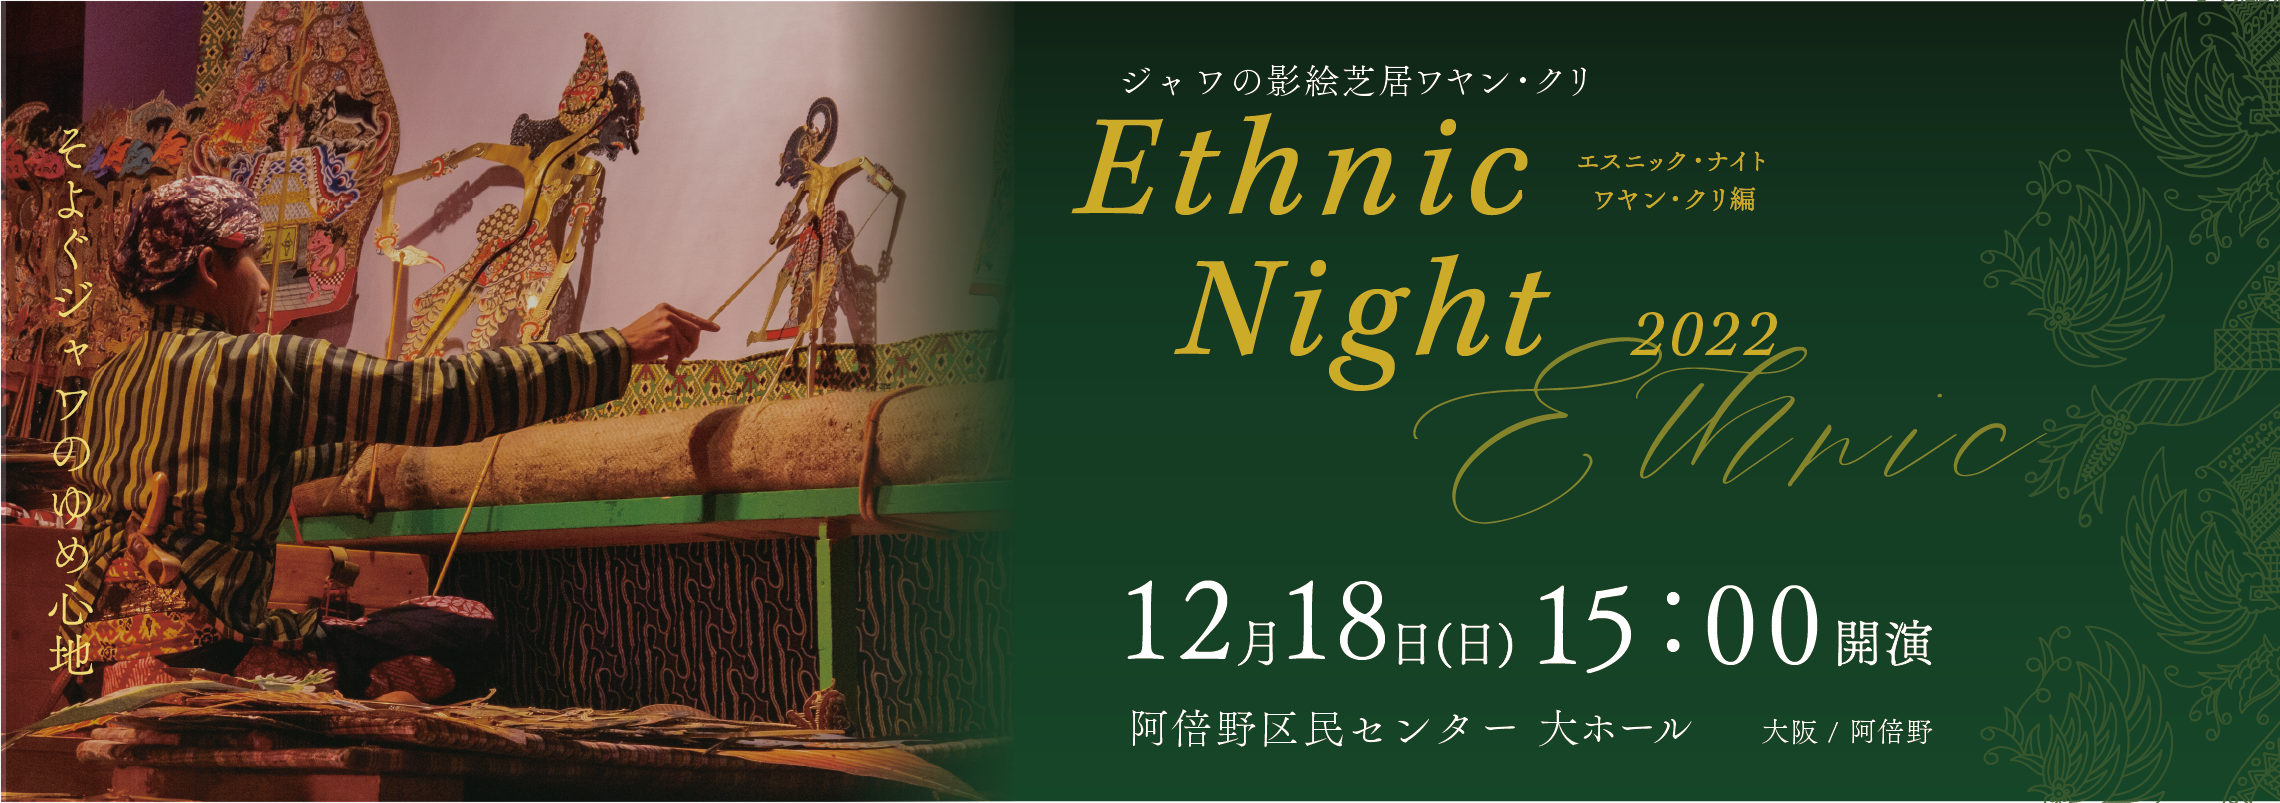 Ethnic_Night_エスニック・ナイト2022・ナイト_12/18_wayang_banner